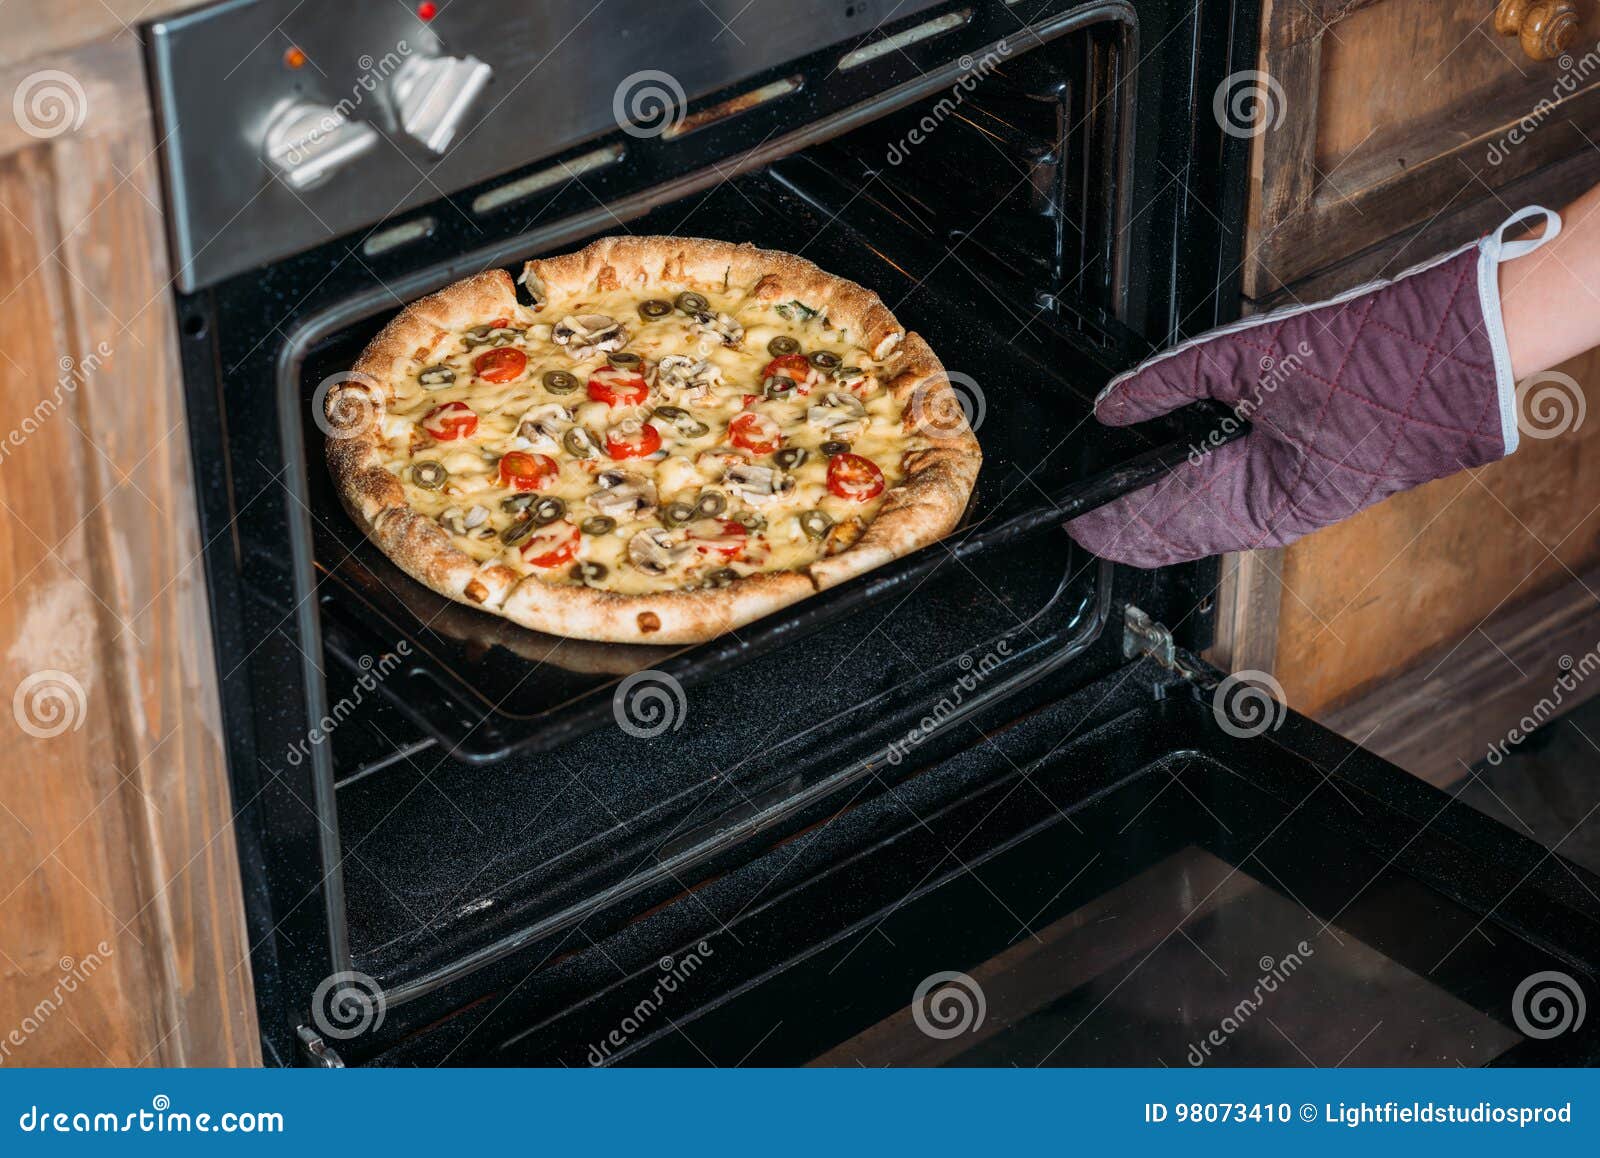 сколько нужно готовить пиццу в электрической духовке фото 106